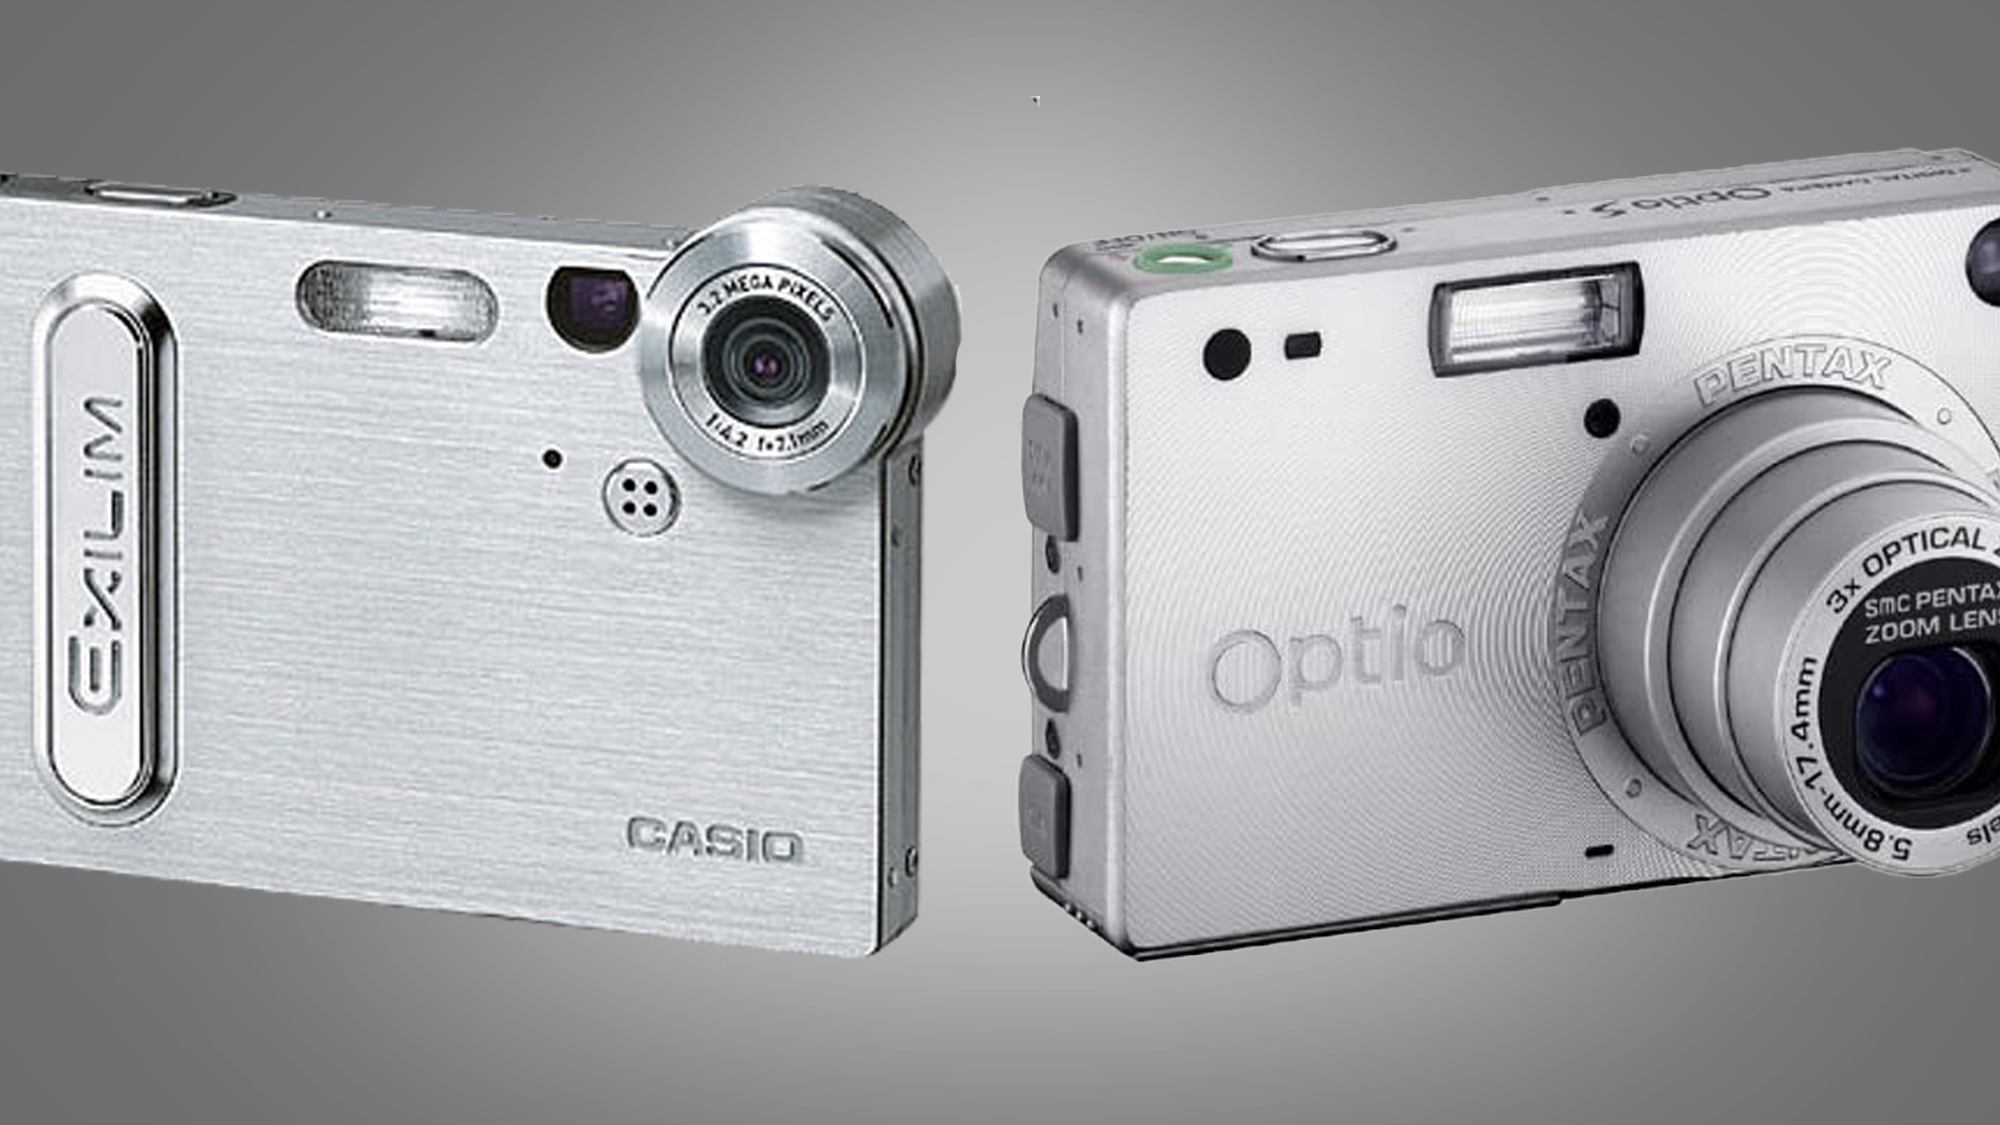 Casio и Pentax компактные камеры рядом друг с другом на сером фоне